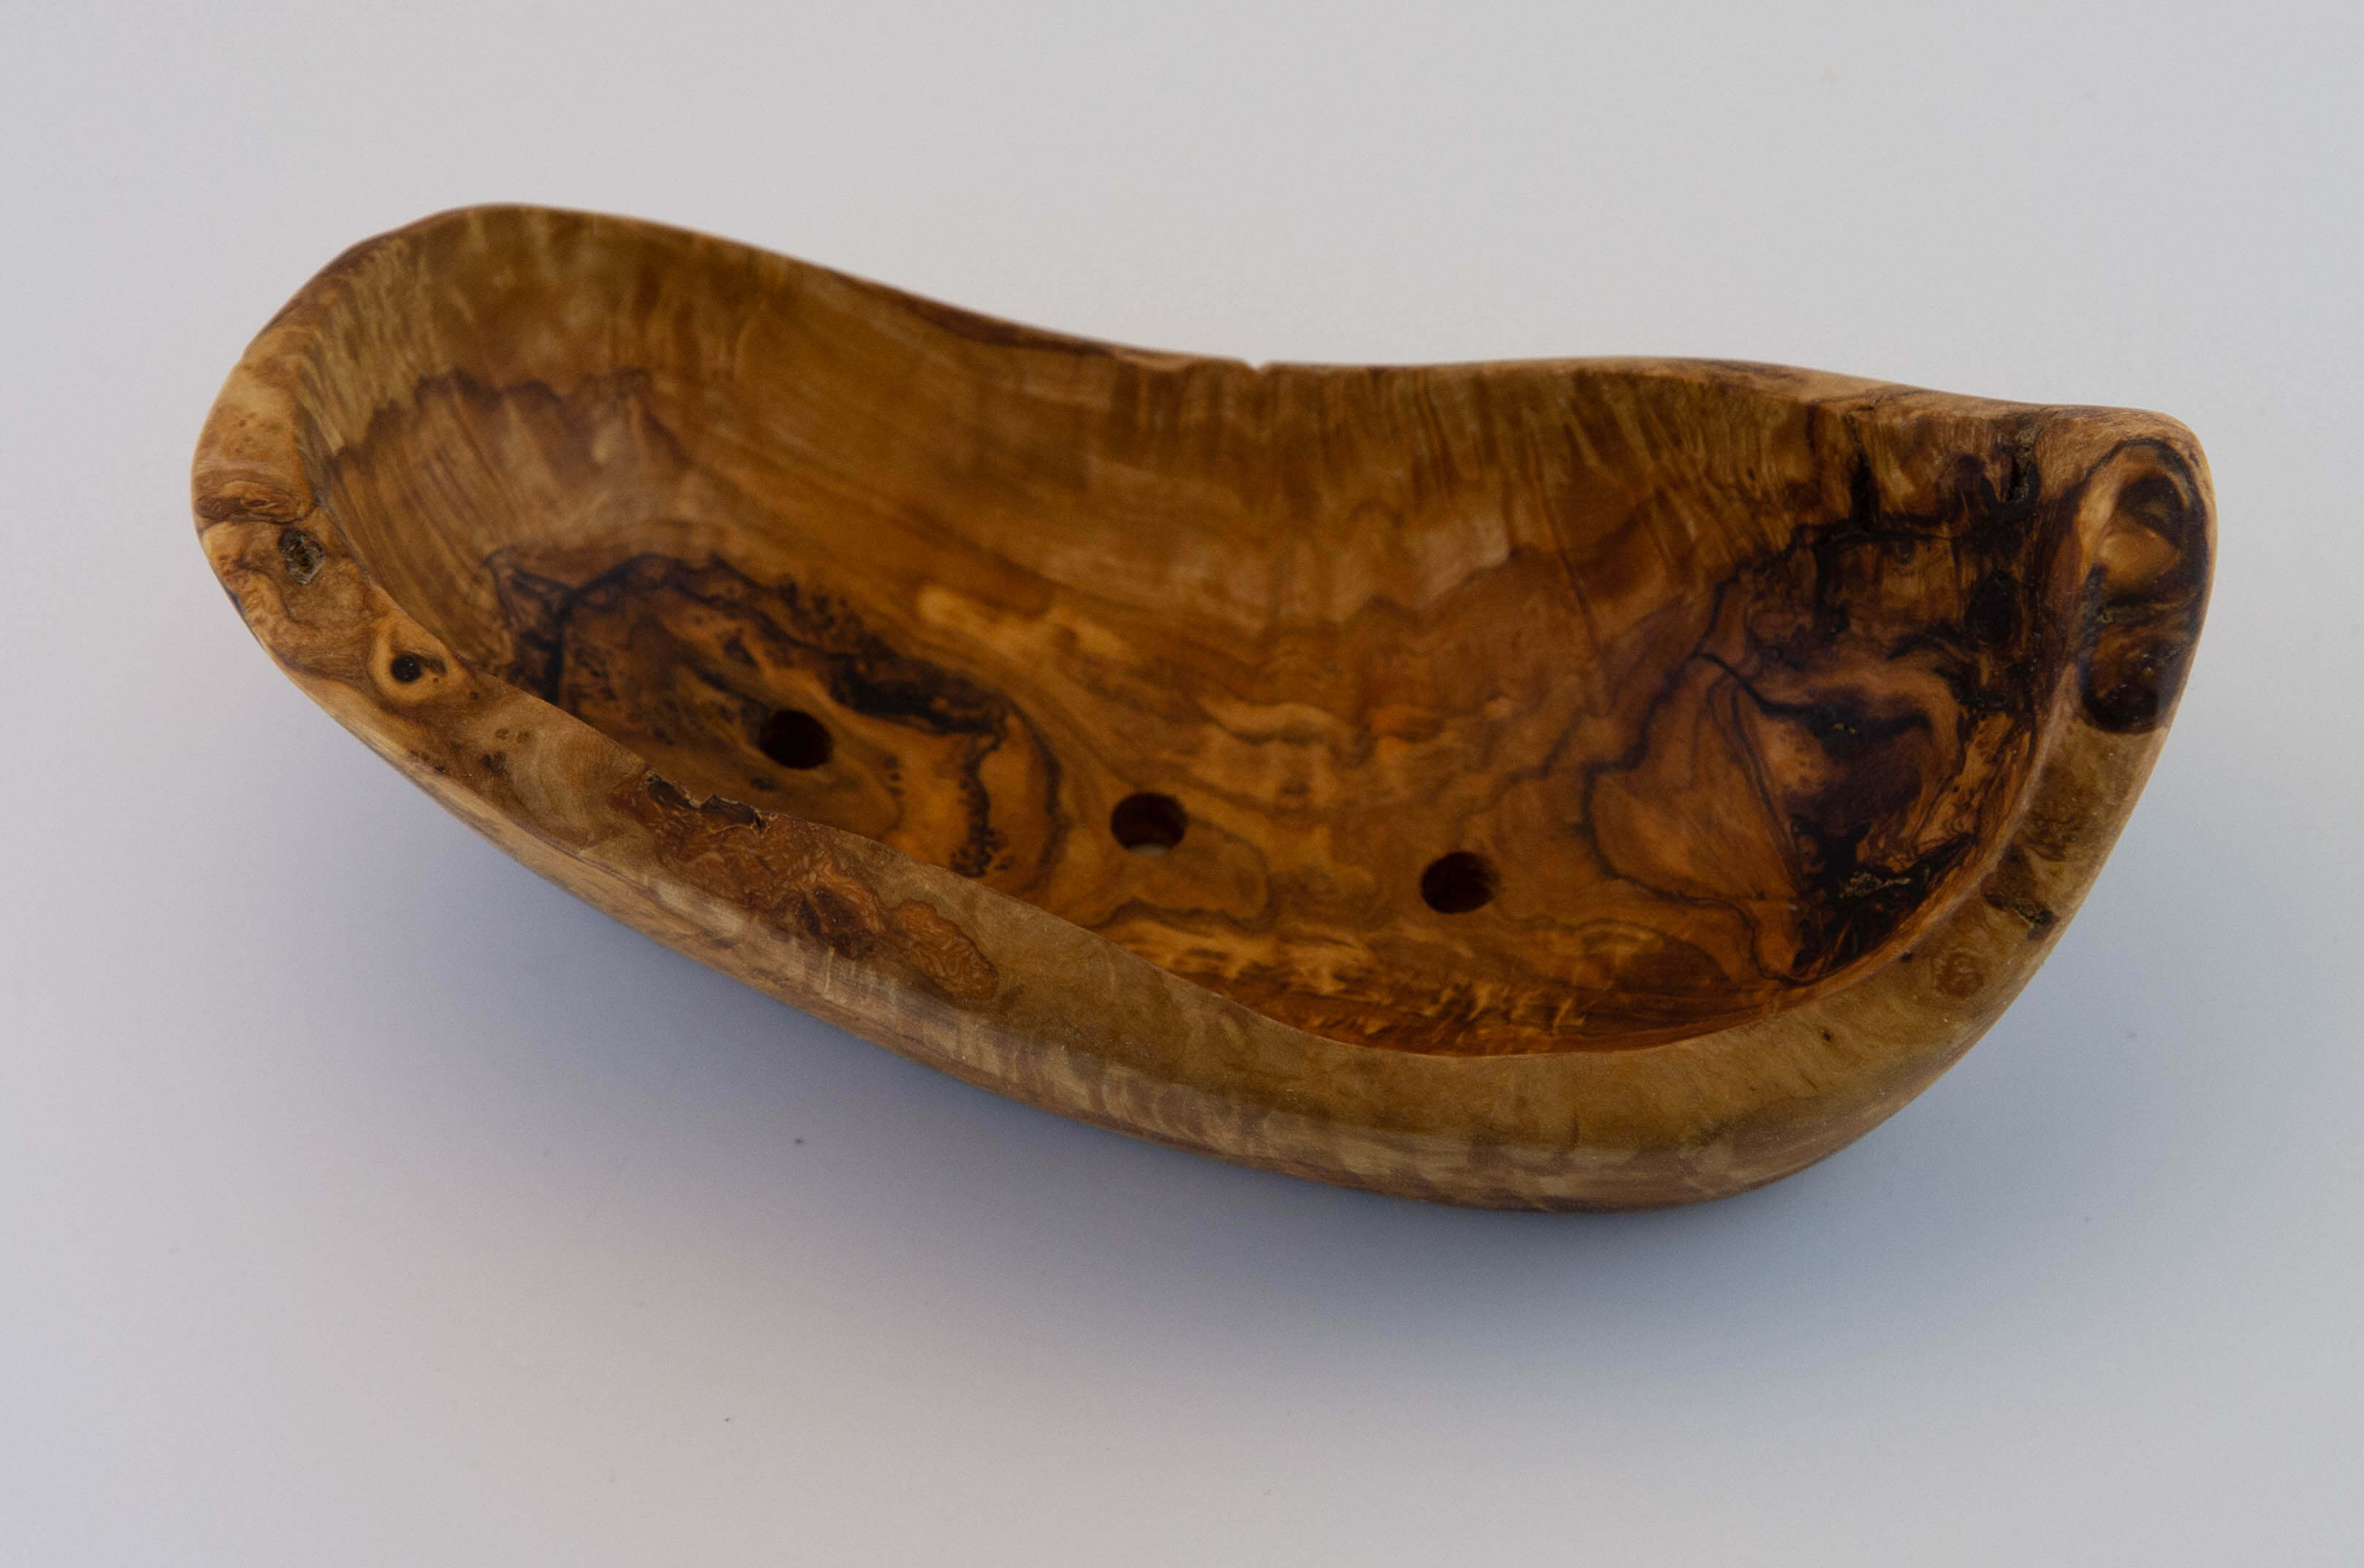 Tagliere in legno d'olivo artigianale cm. 33 x 18,5 X 2,5